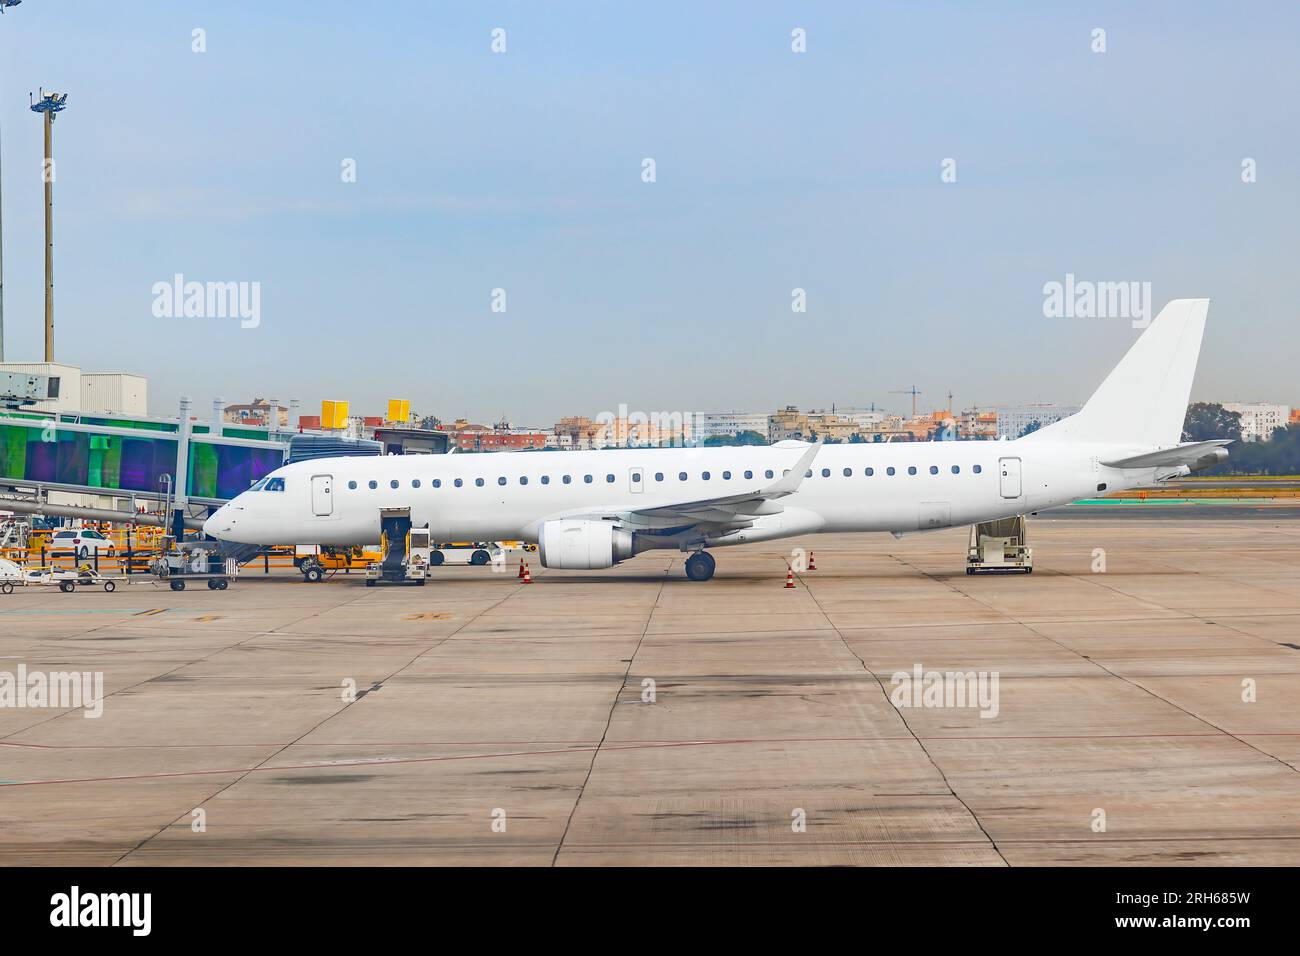 Un avion de passagers est en préparation au terminal de l'aéroport pour l'embarquement des passagers Banque D'Images